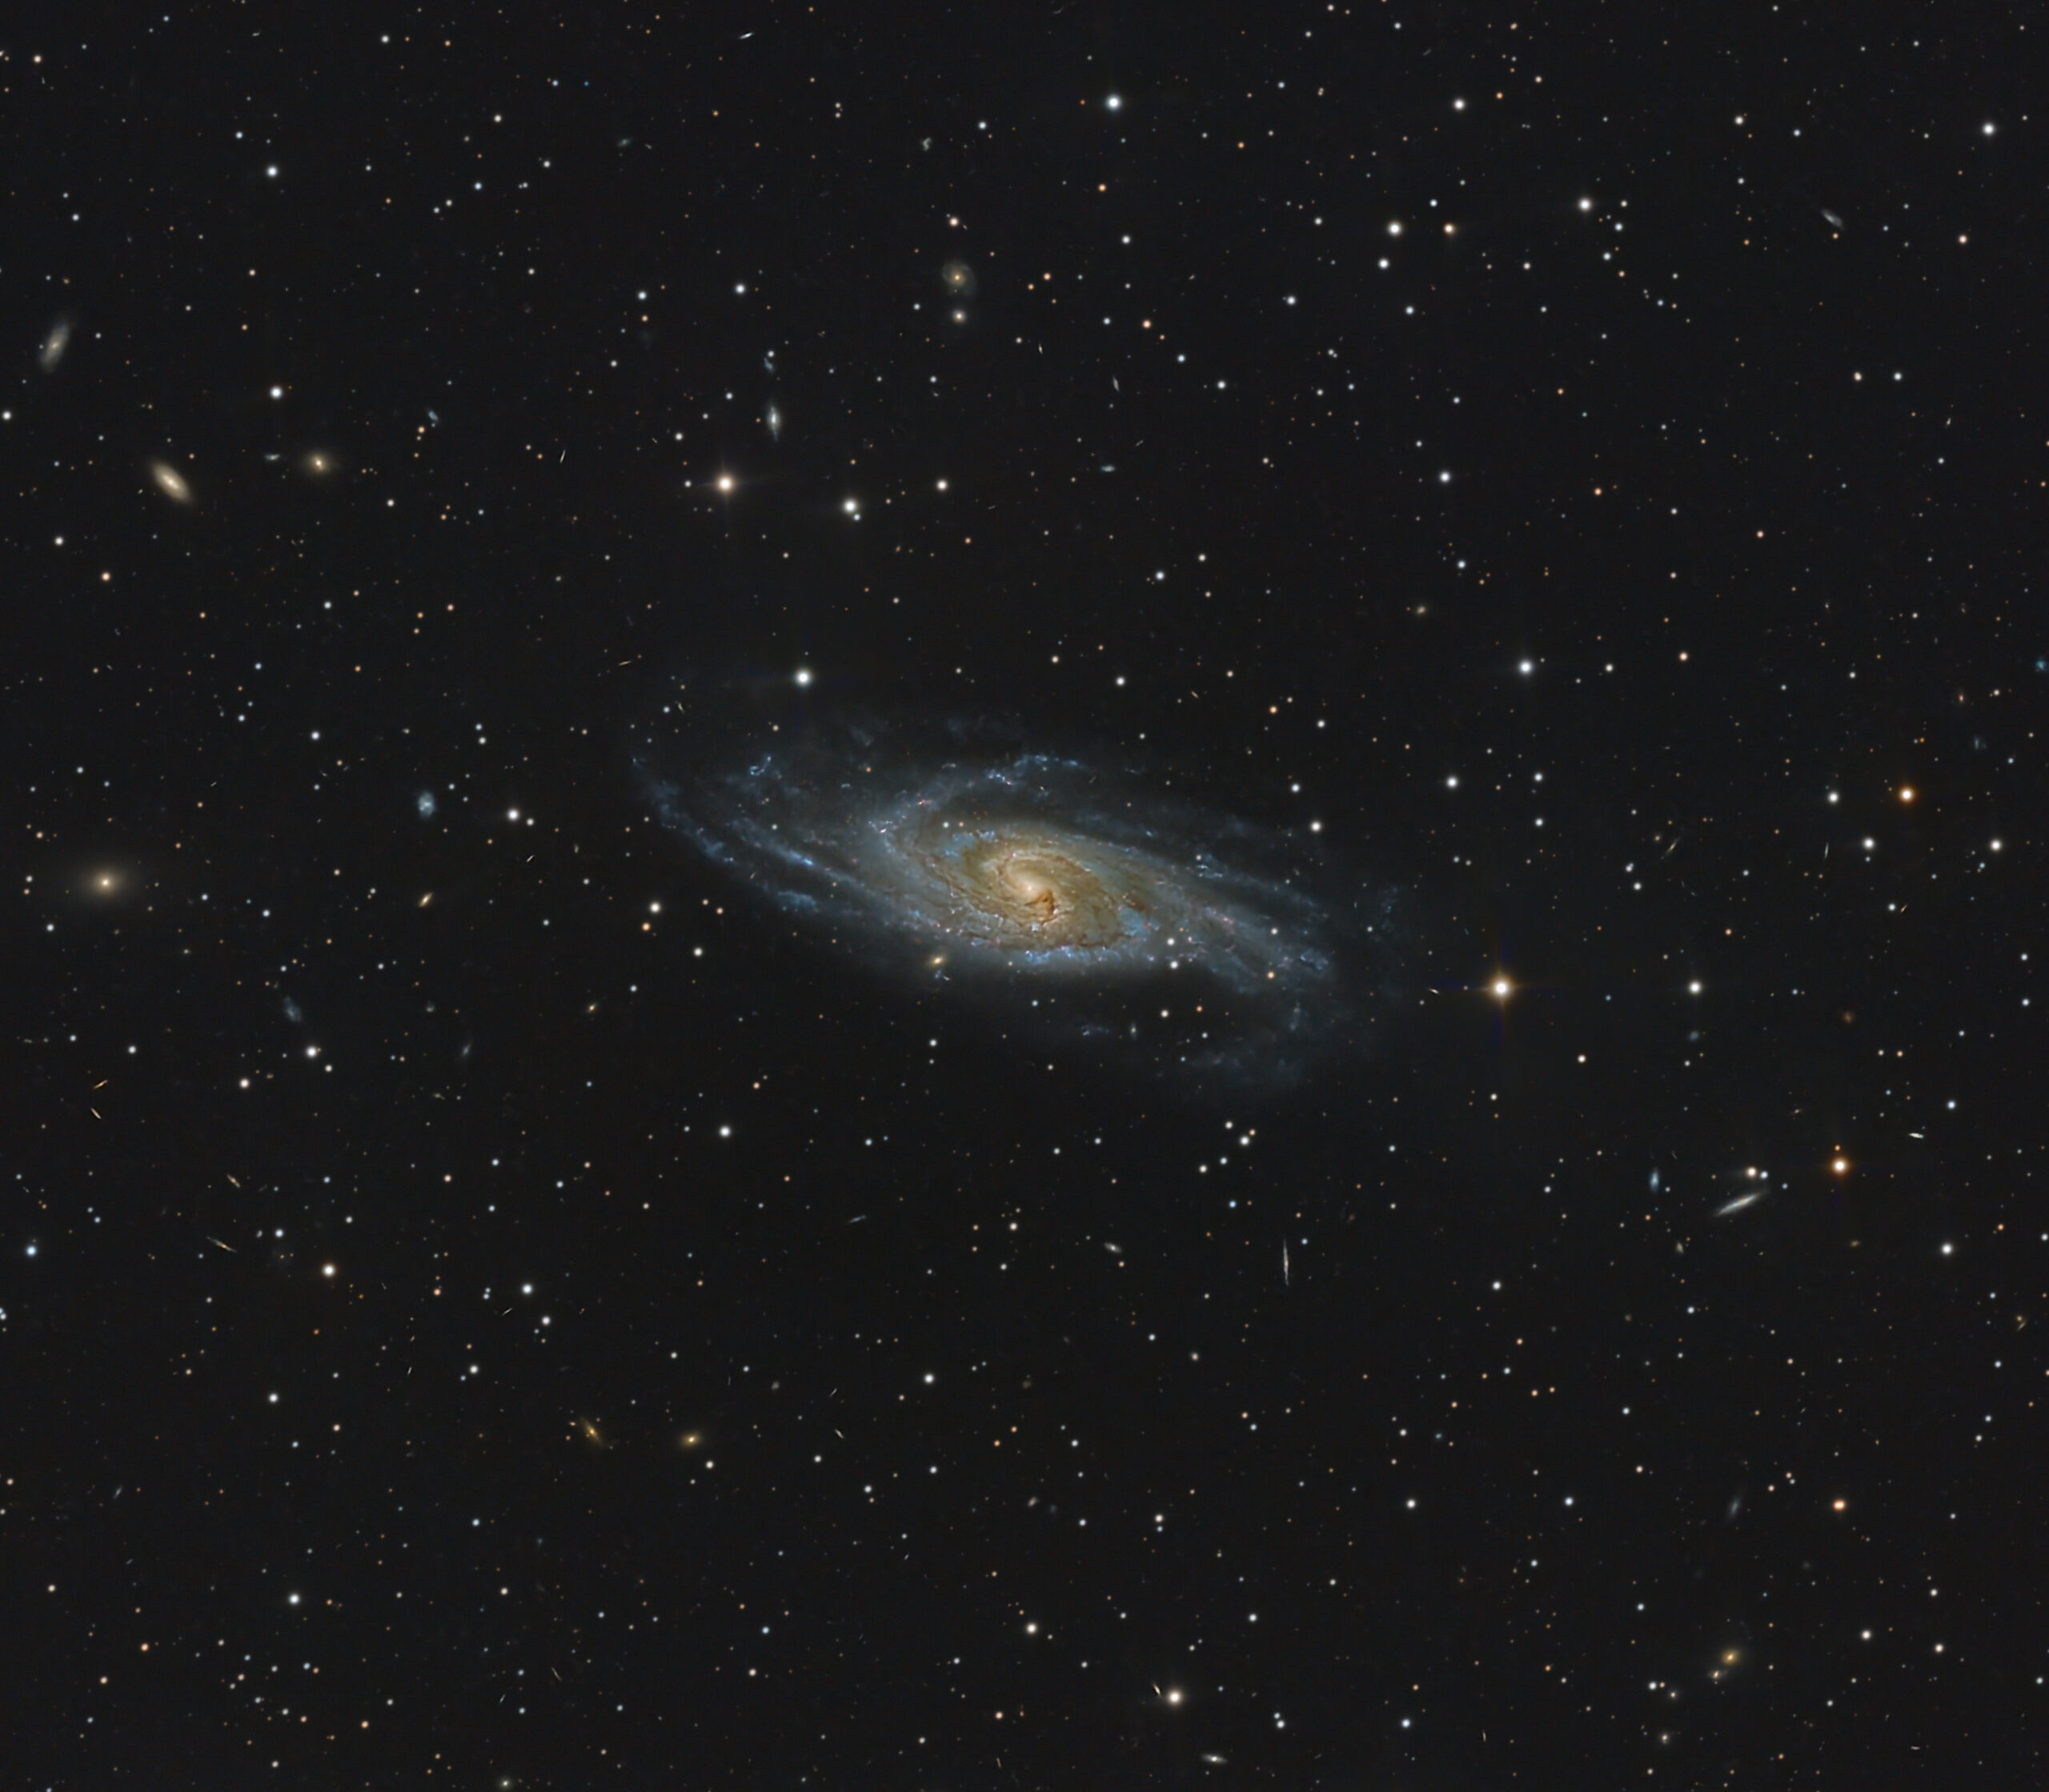 NGC 5161